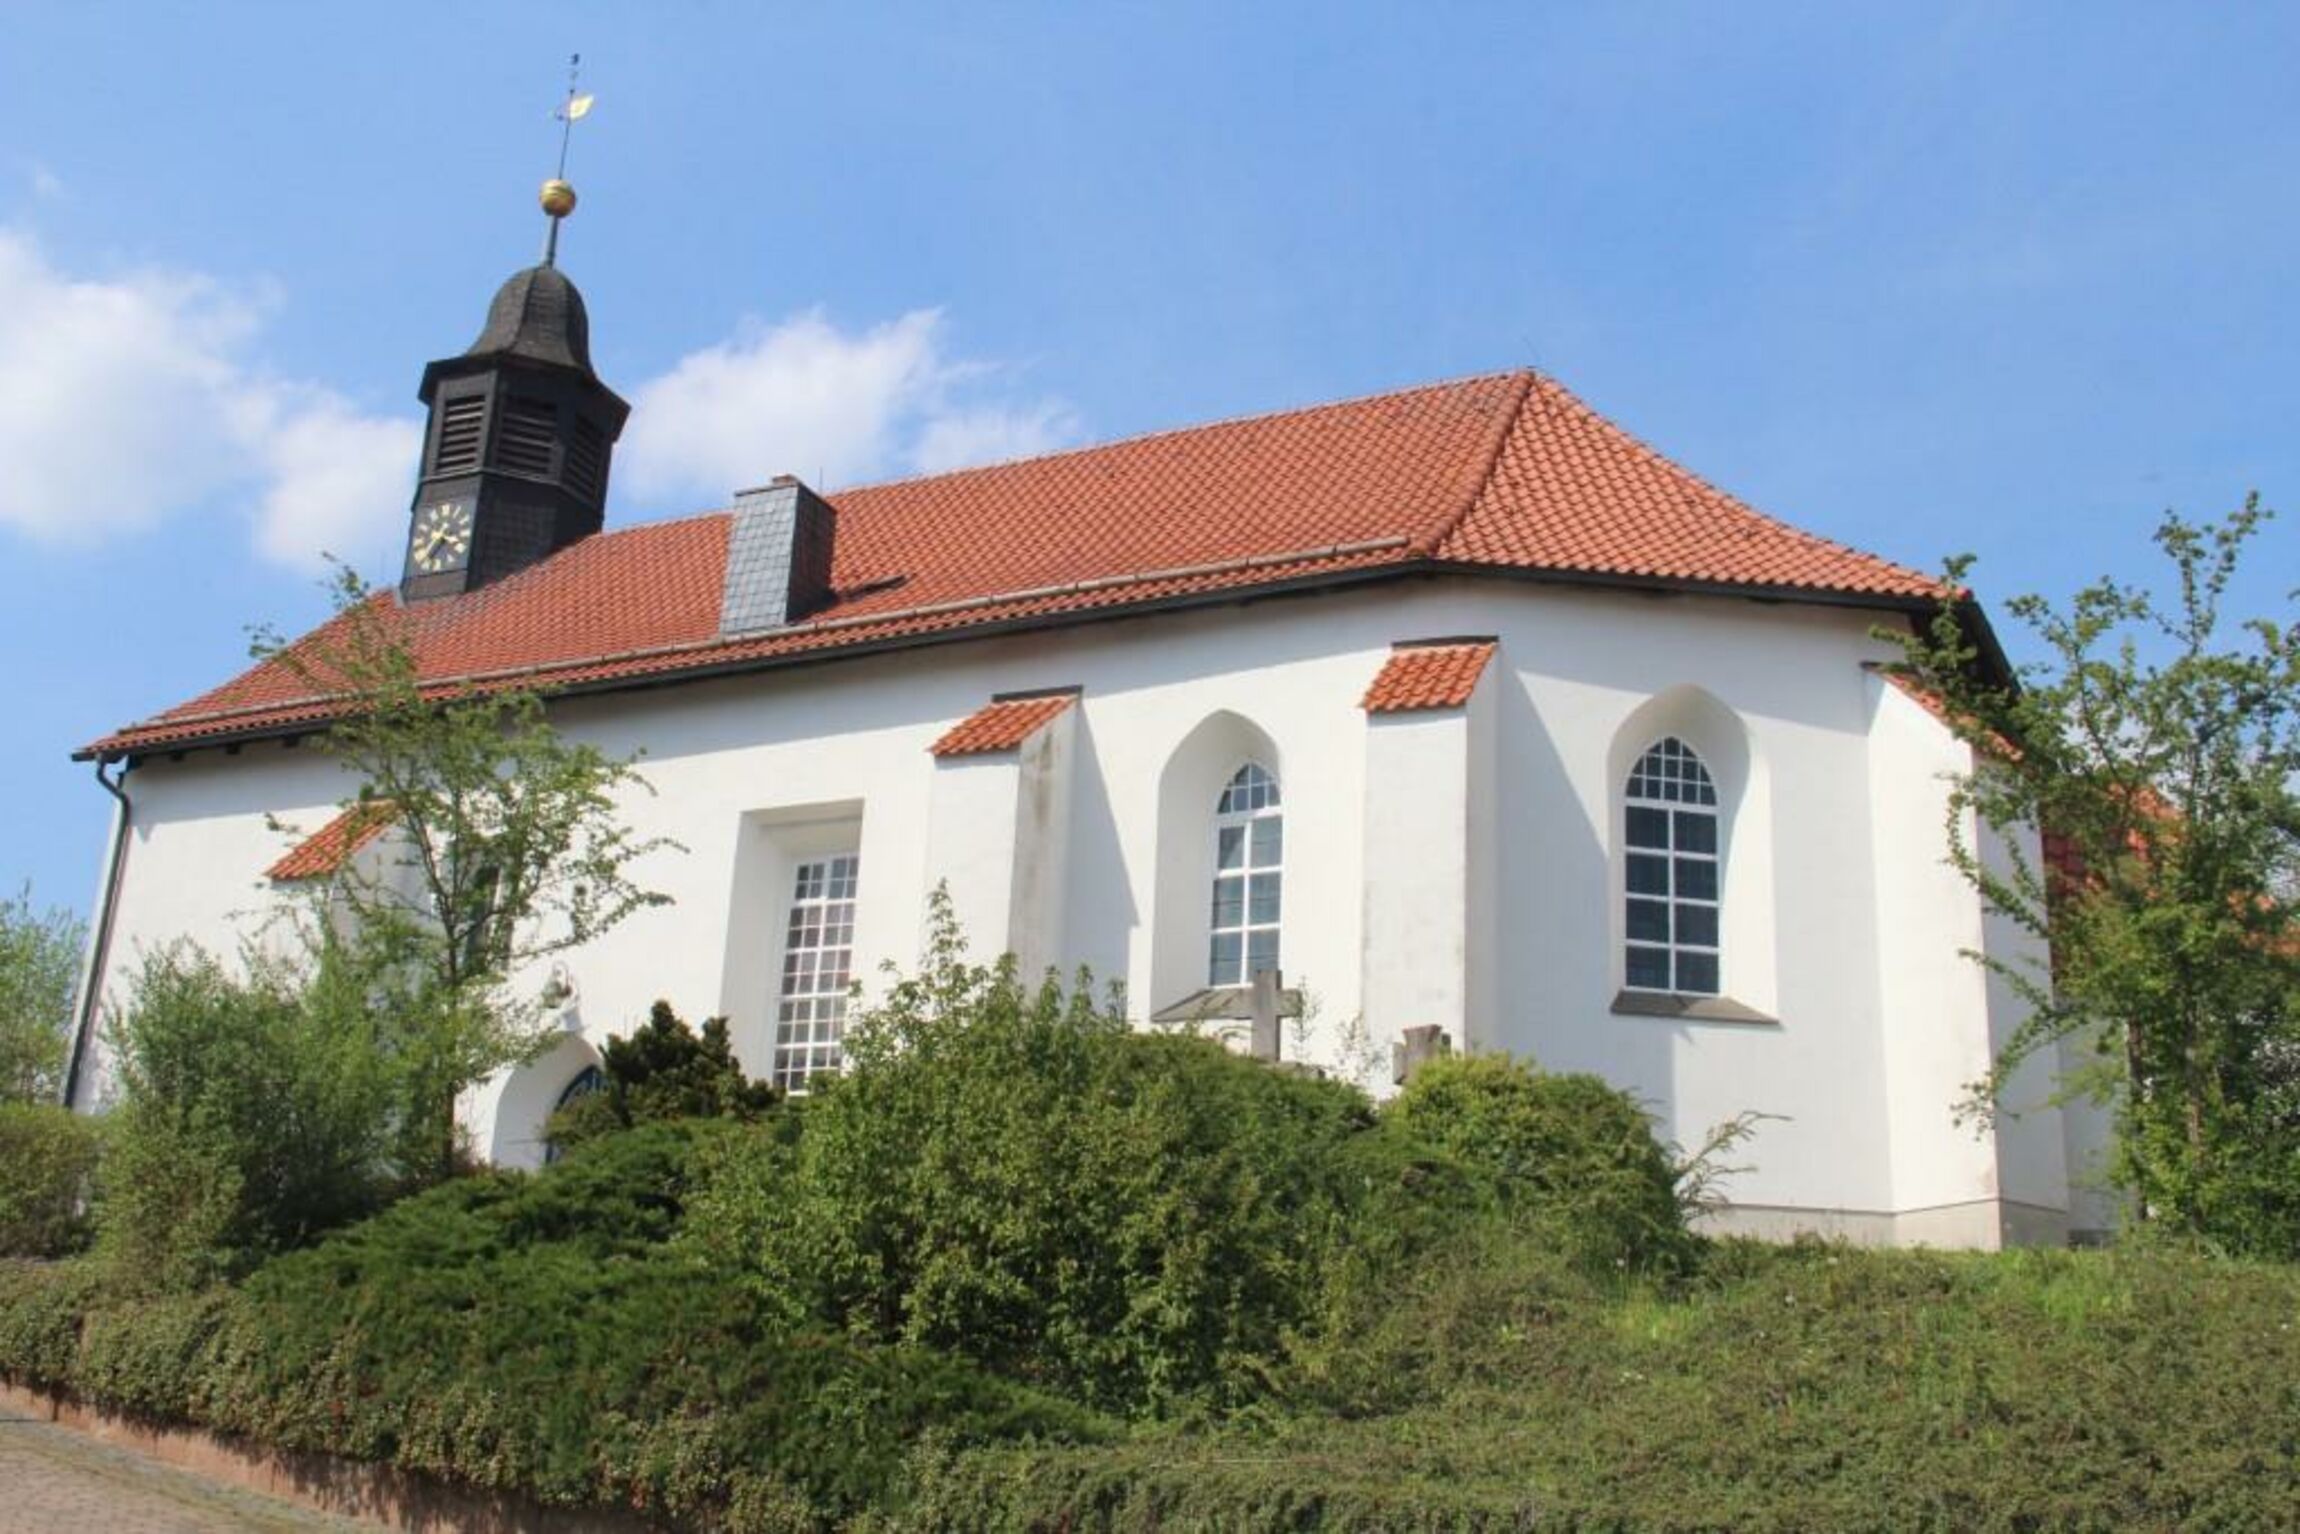 St. Valentini-Kirche in Elvershausen